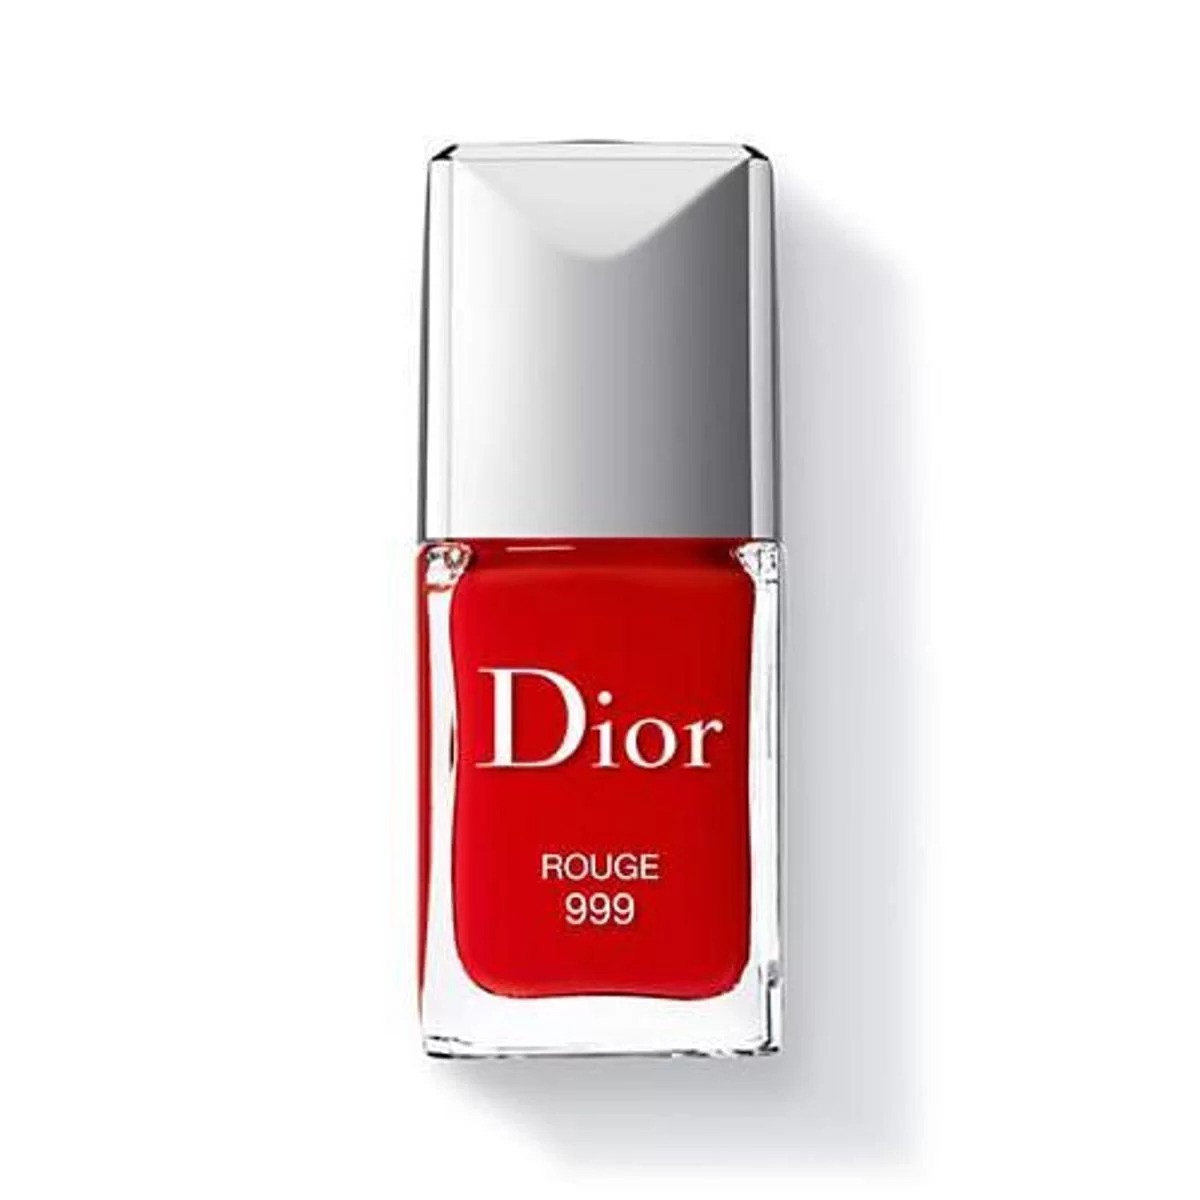 Esmalte cor 999 Rouge, Dior (R$ 165) (Foto: Divulgação)